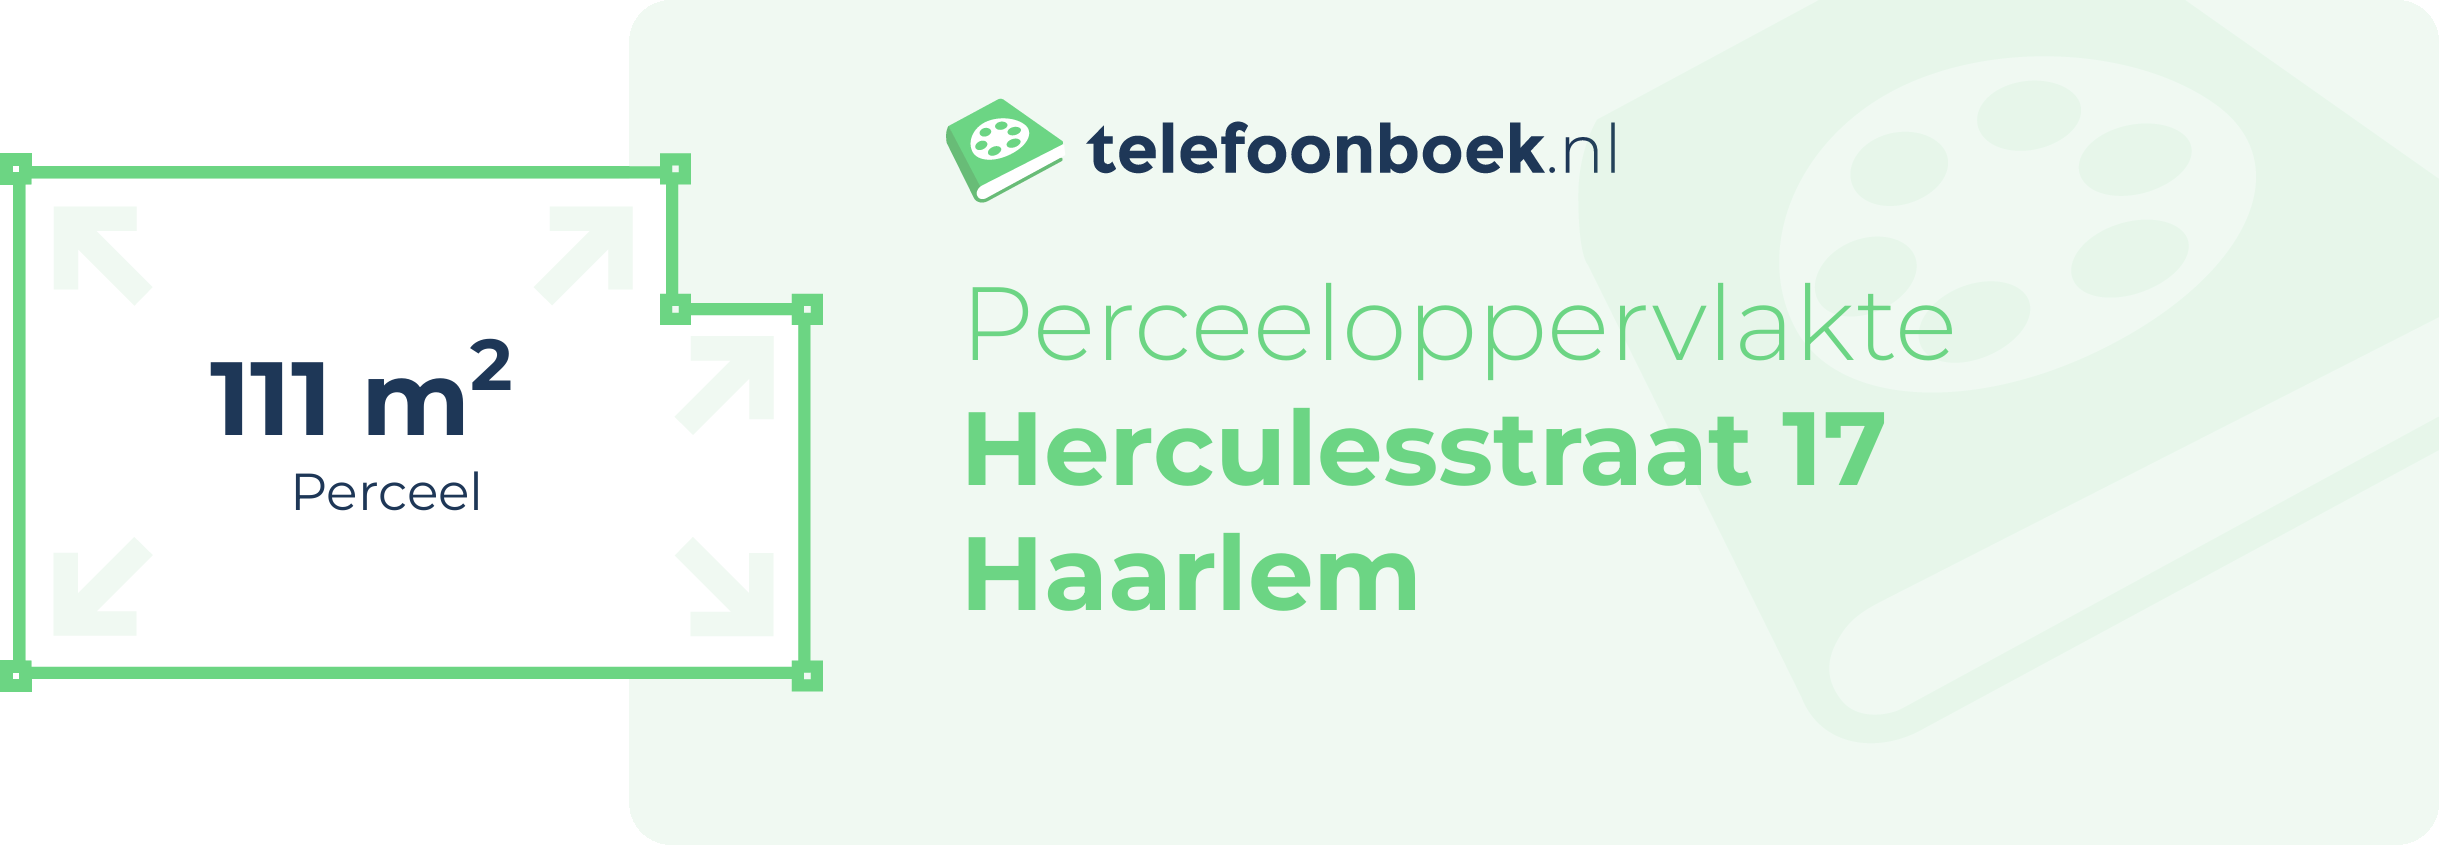 Perceeloppervlakte Herculesstraat 17 Haarlem